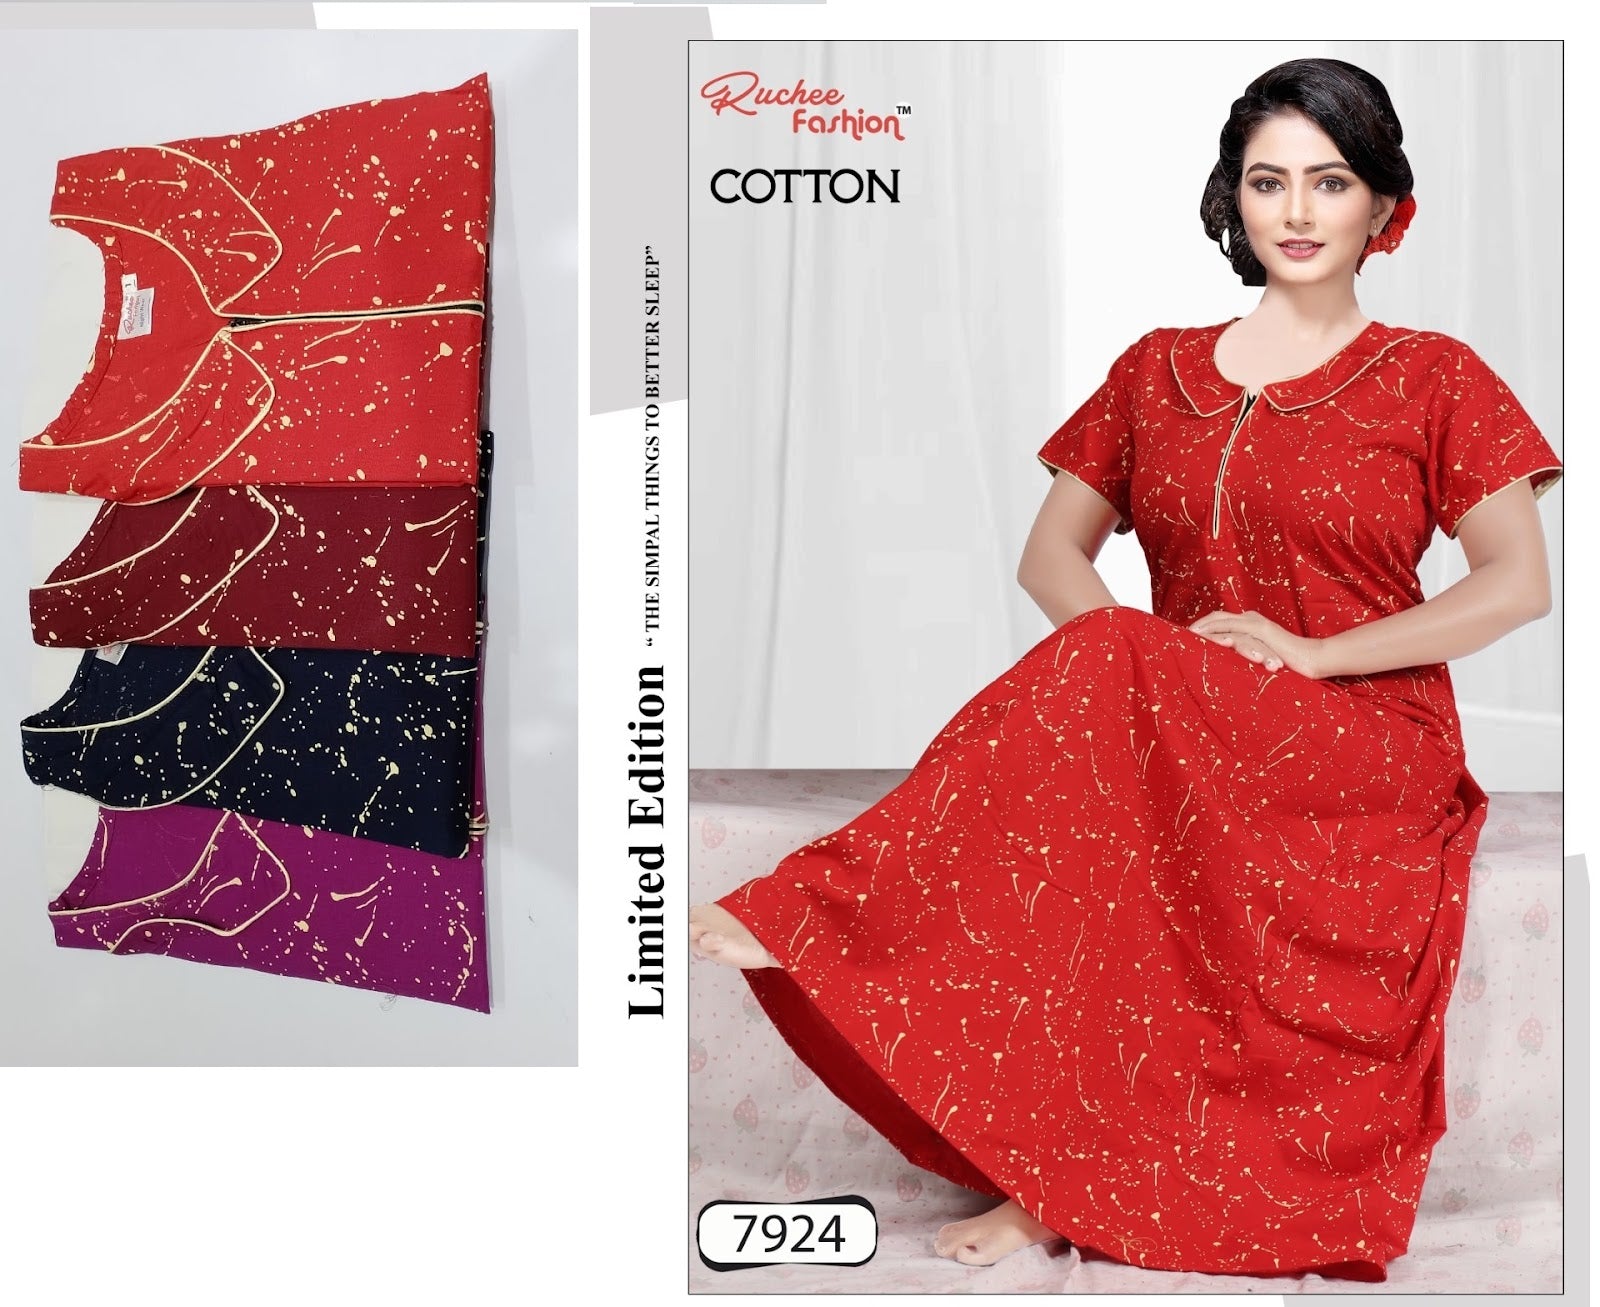 Cotton 141023 Ruchee Fashion Night Gowns